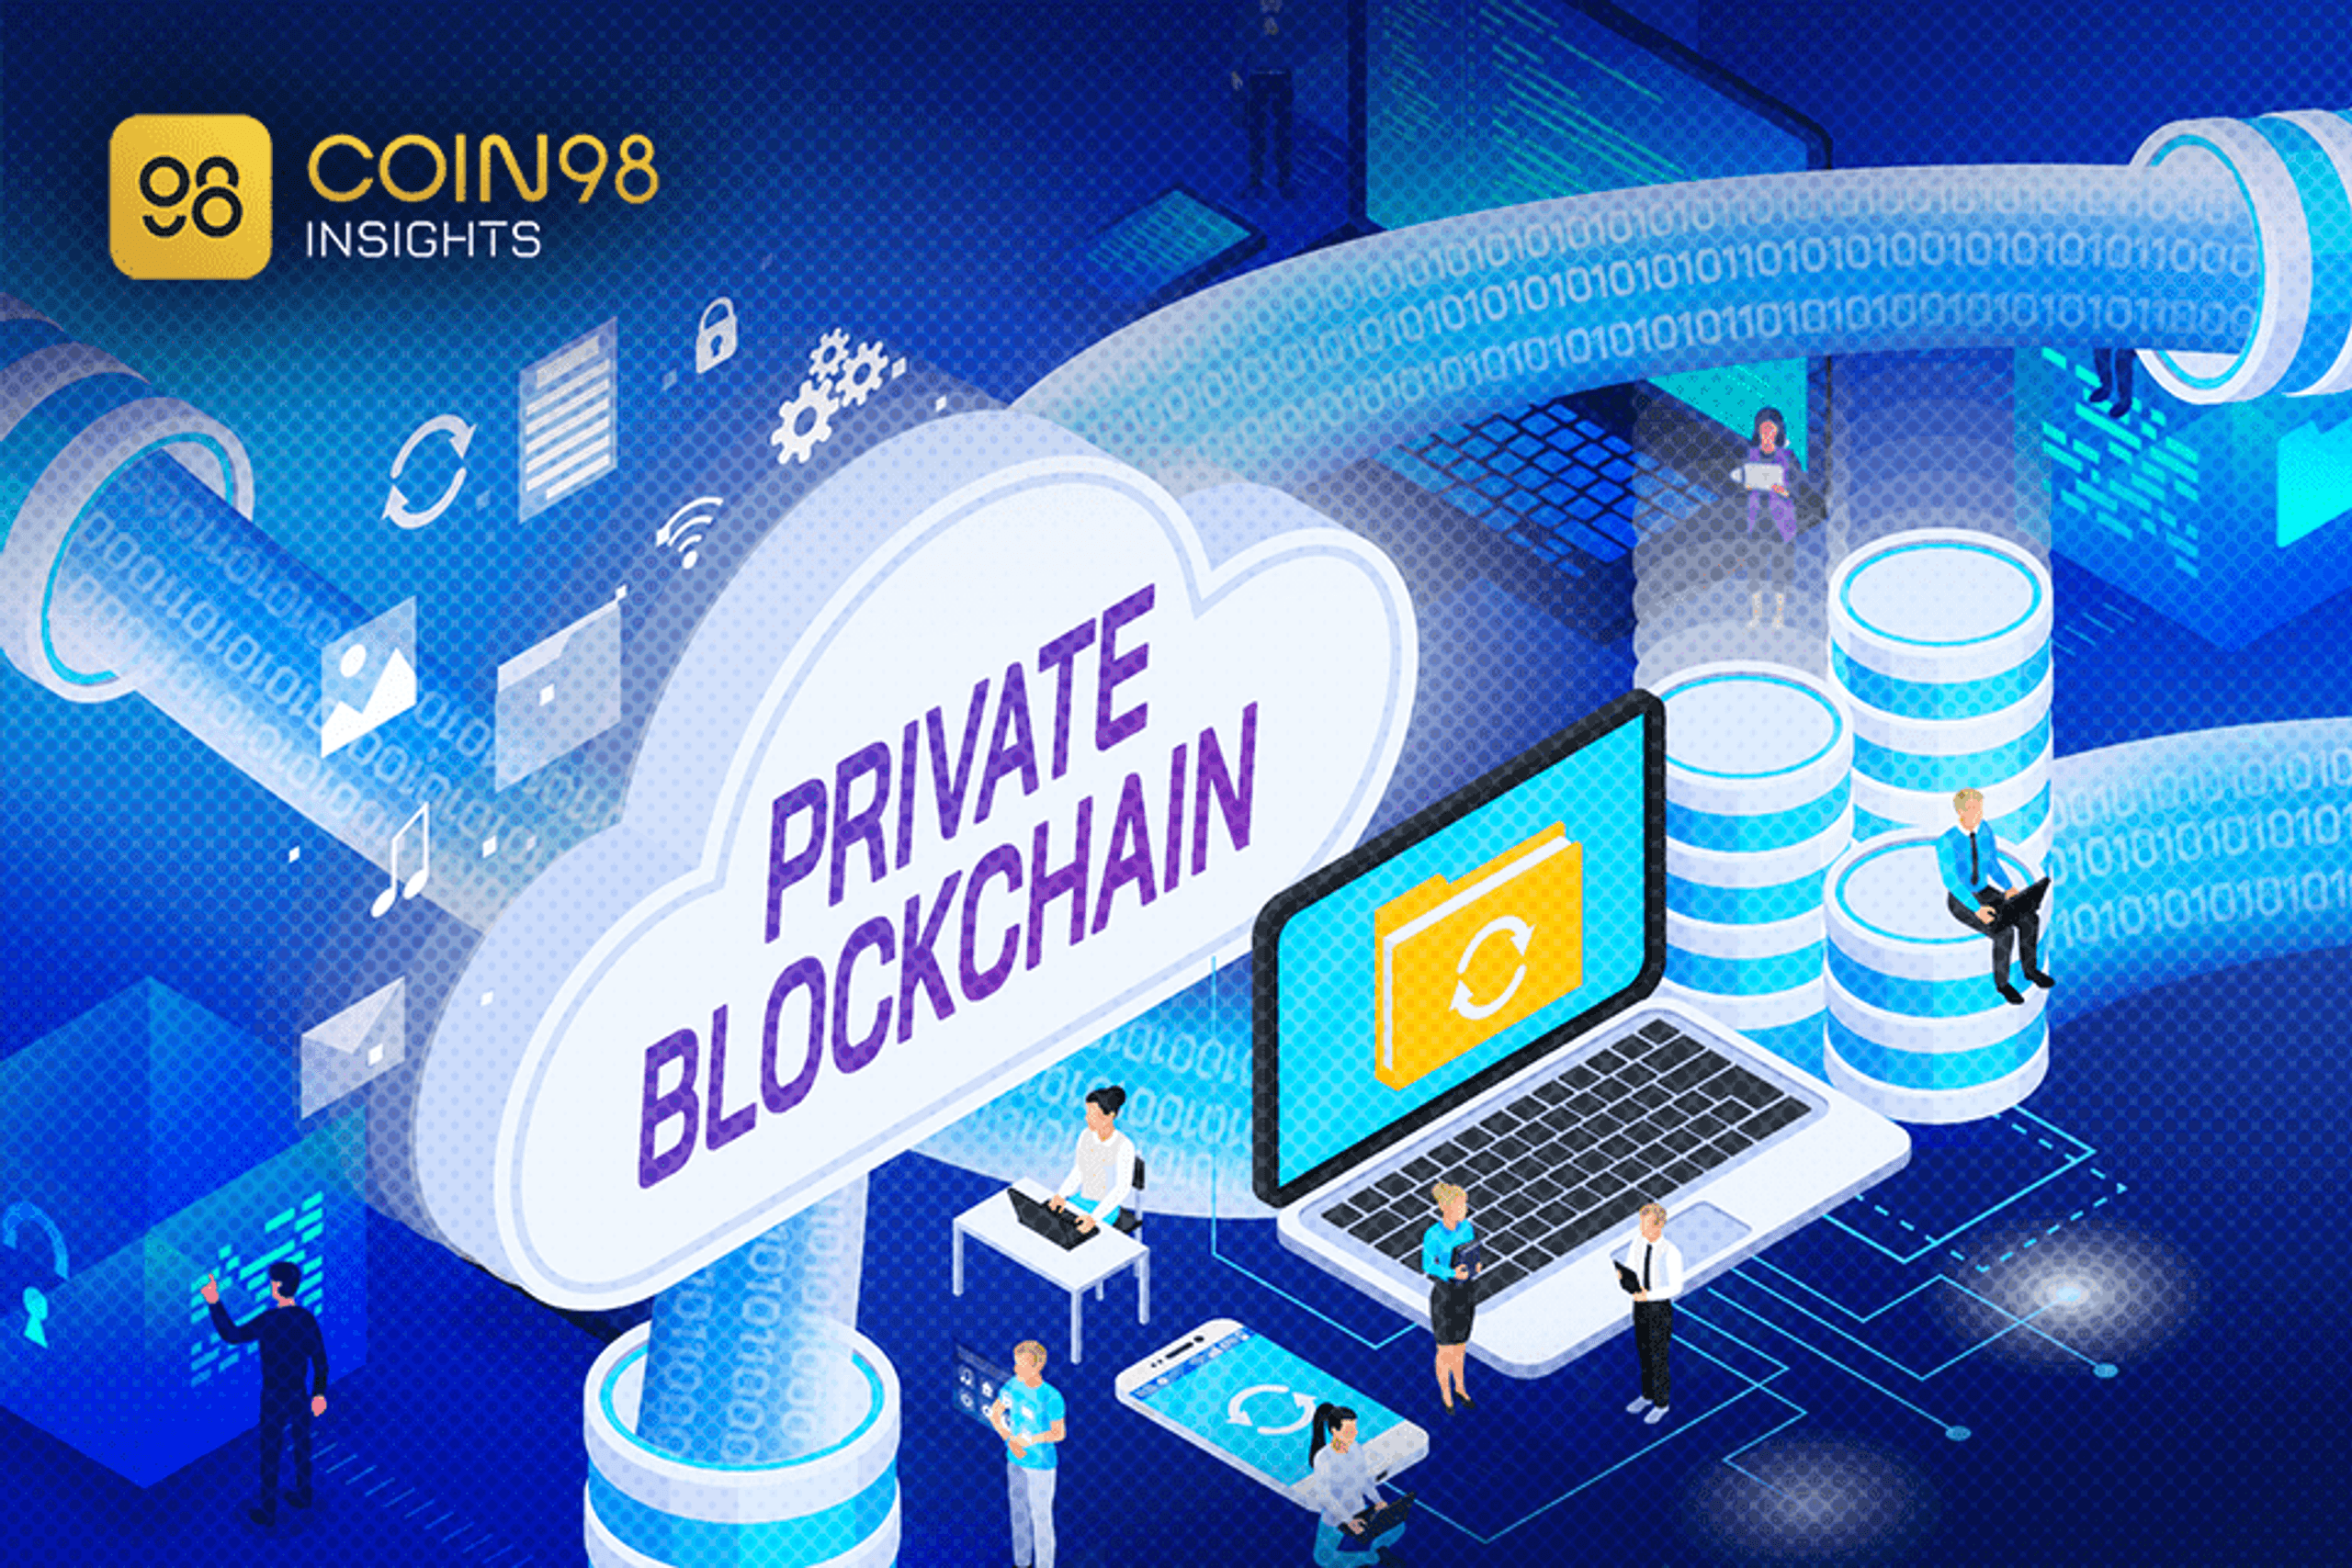 private blockchain